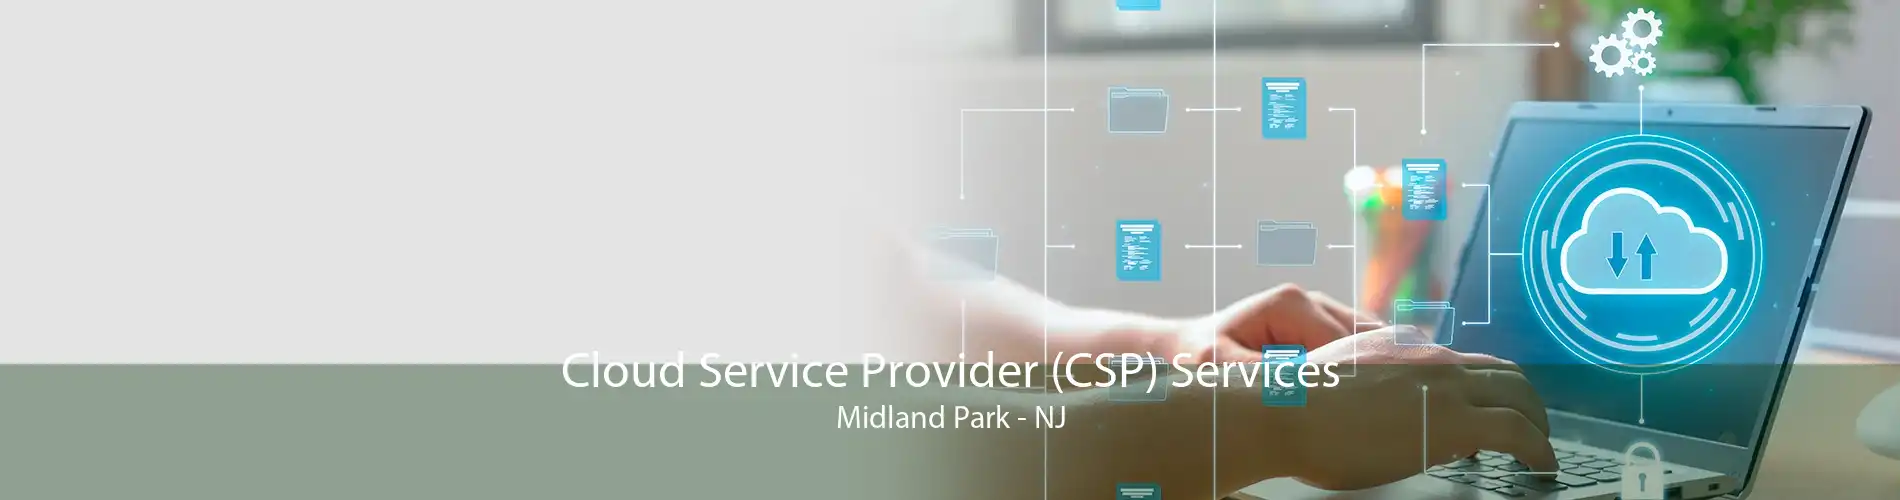 Cloud Service Provider (CSP) Services Midland Park - NJ